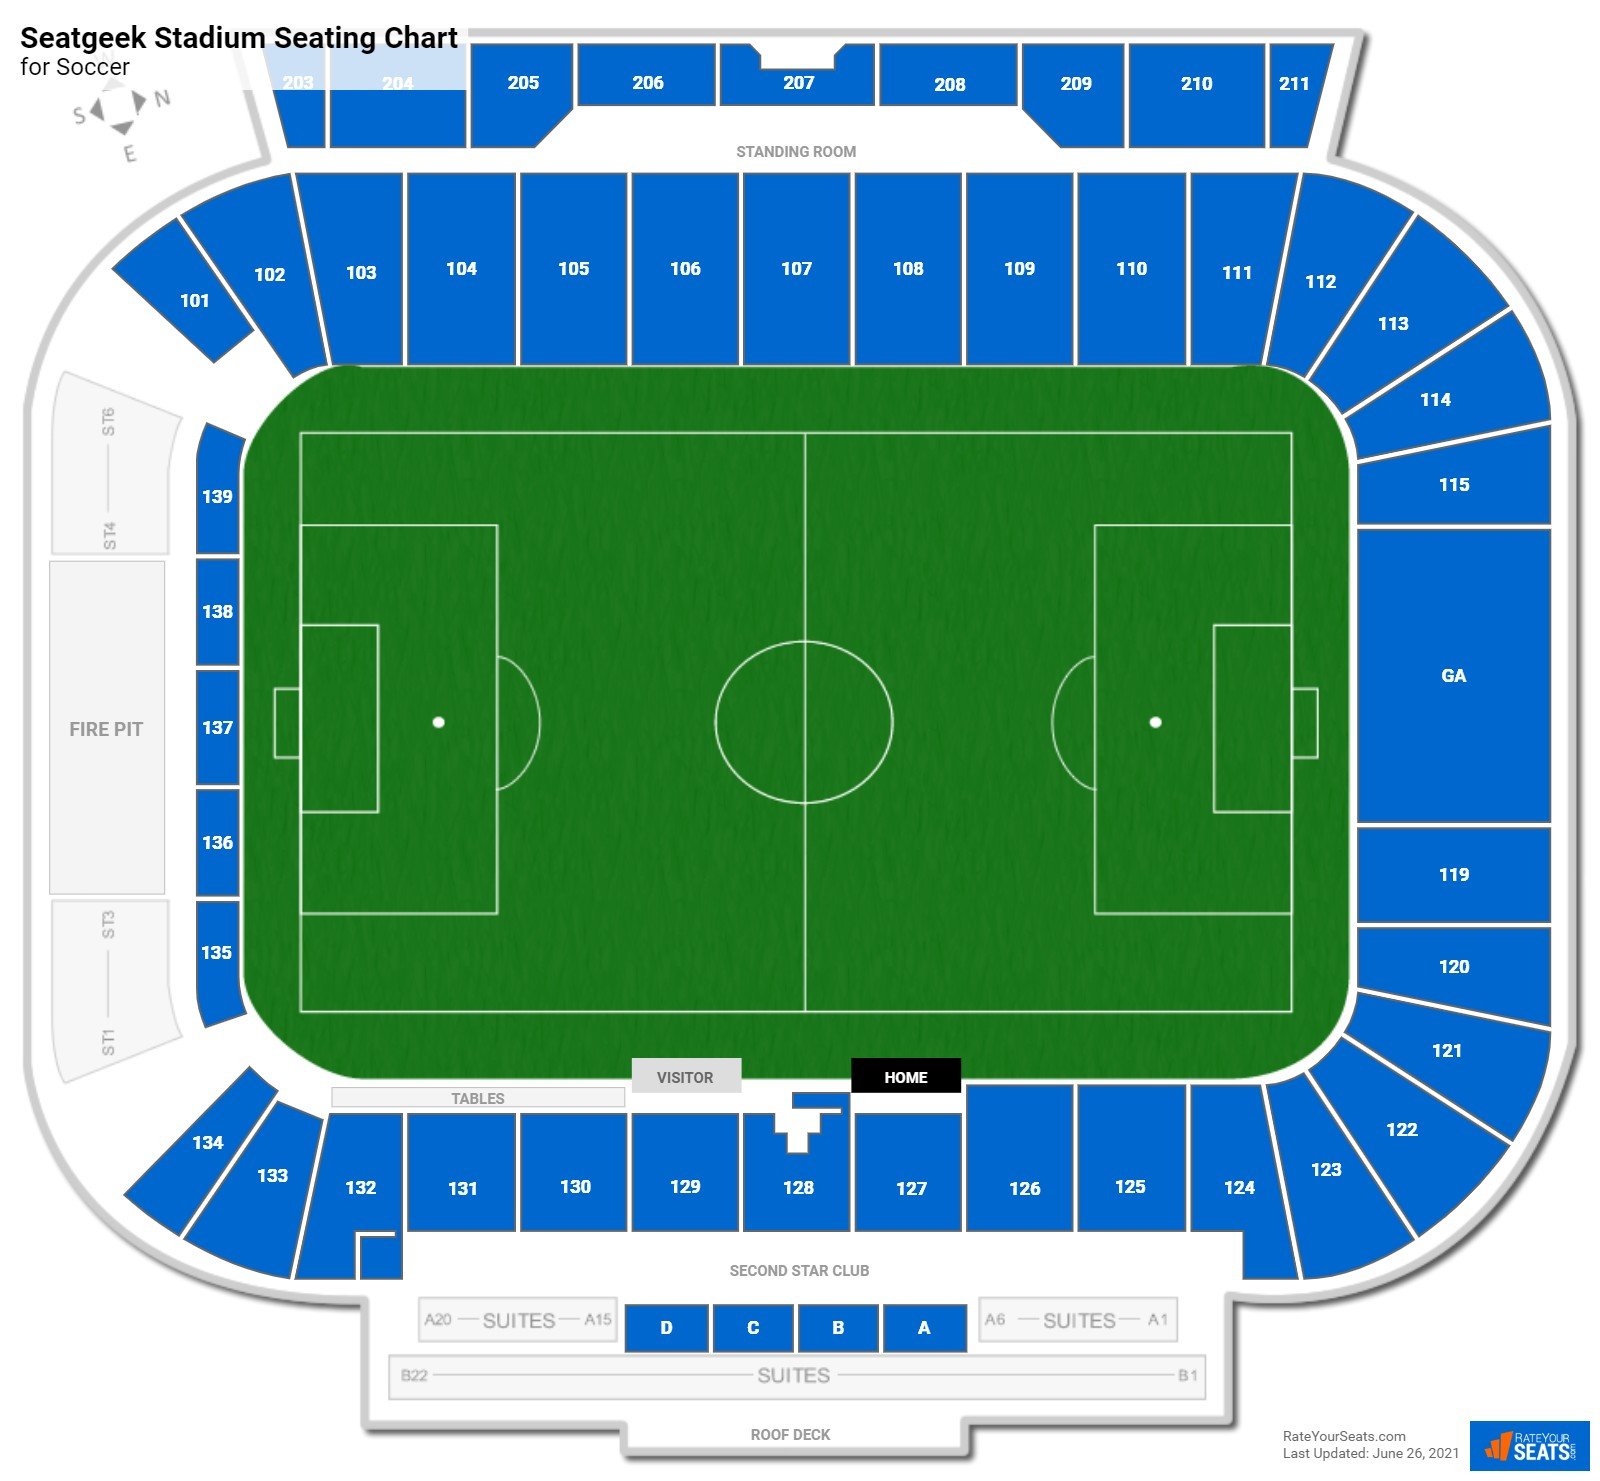 Seatgeek Stadium Soccer Seating Chart